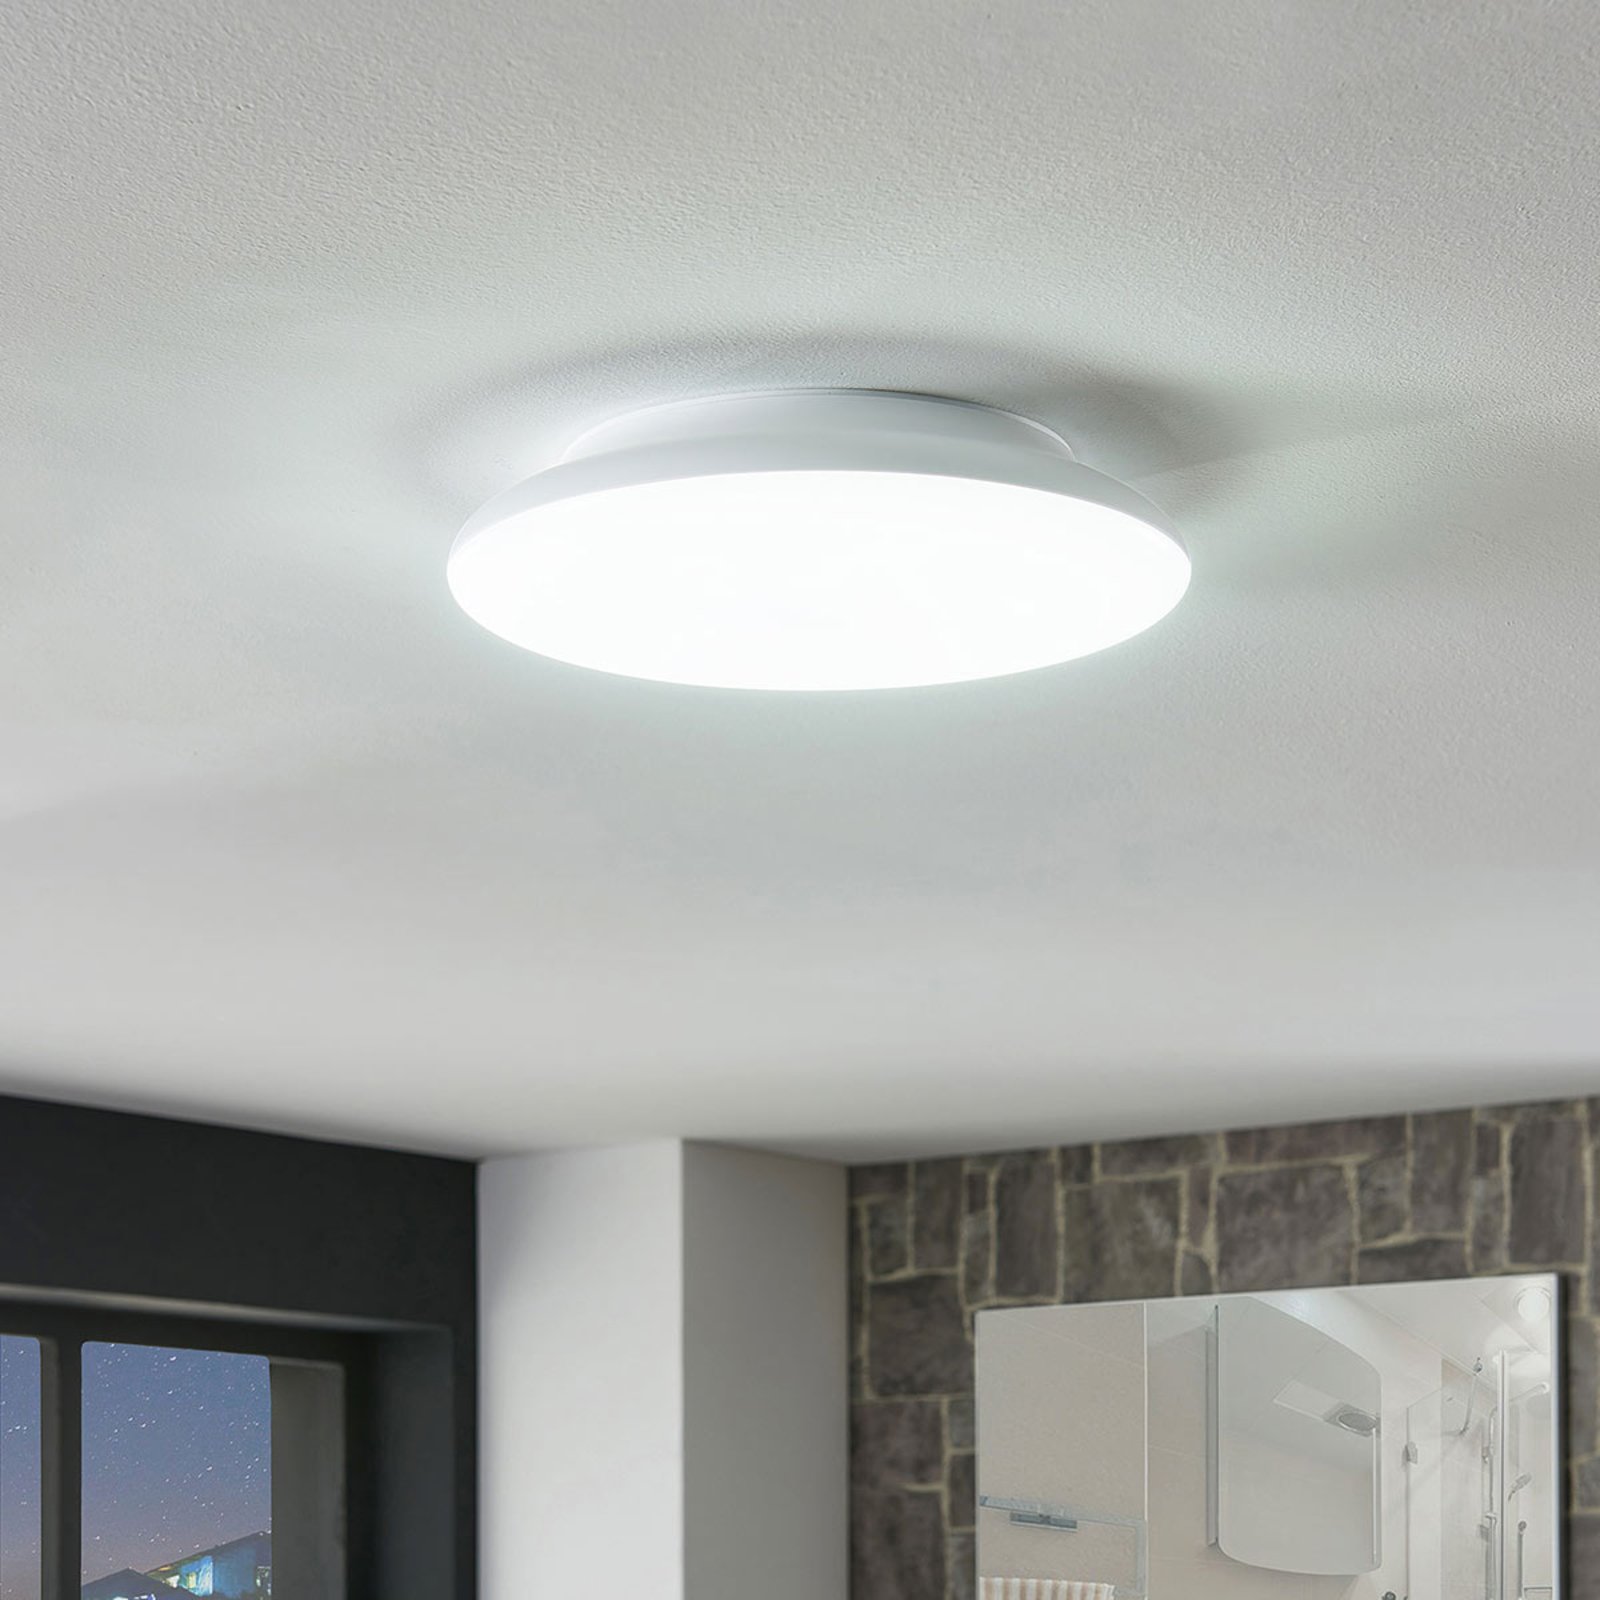 LED-Deckenlampe Azra, weiß, rund, IP54, Ø 25 cm